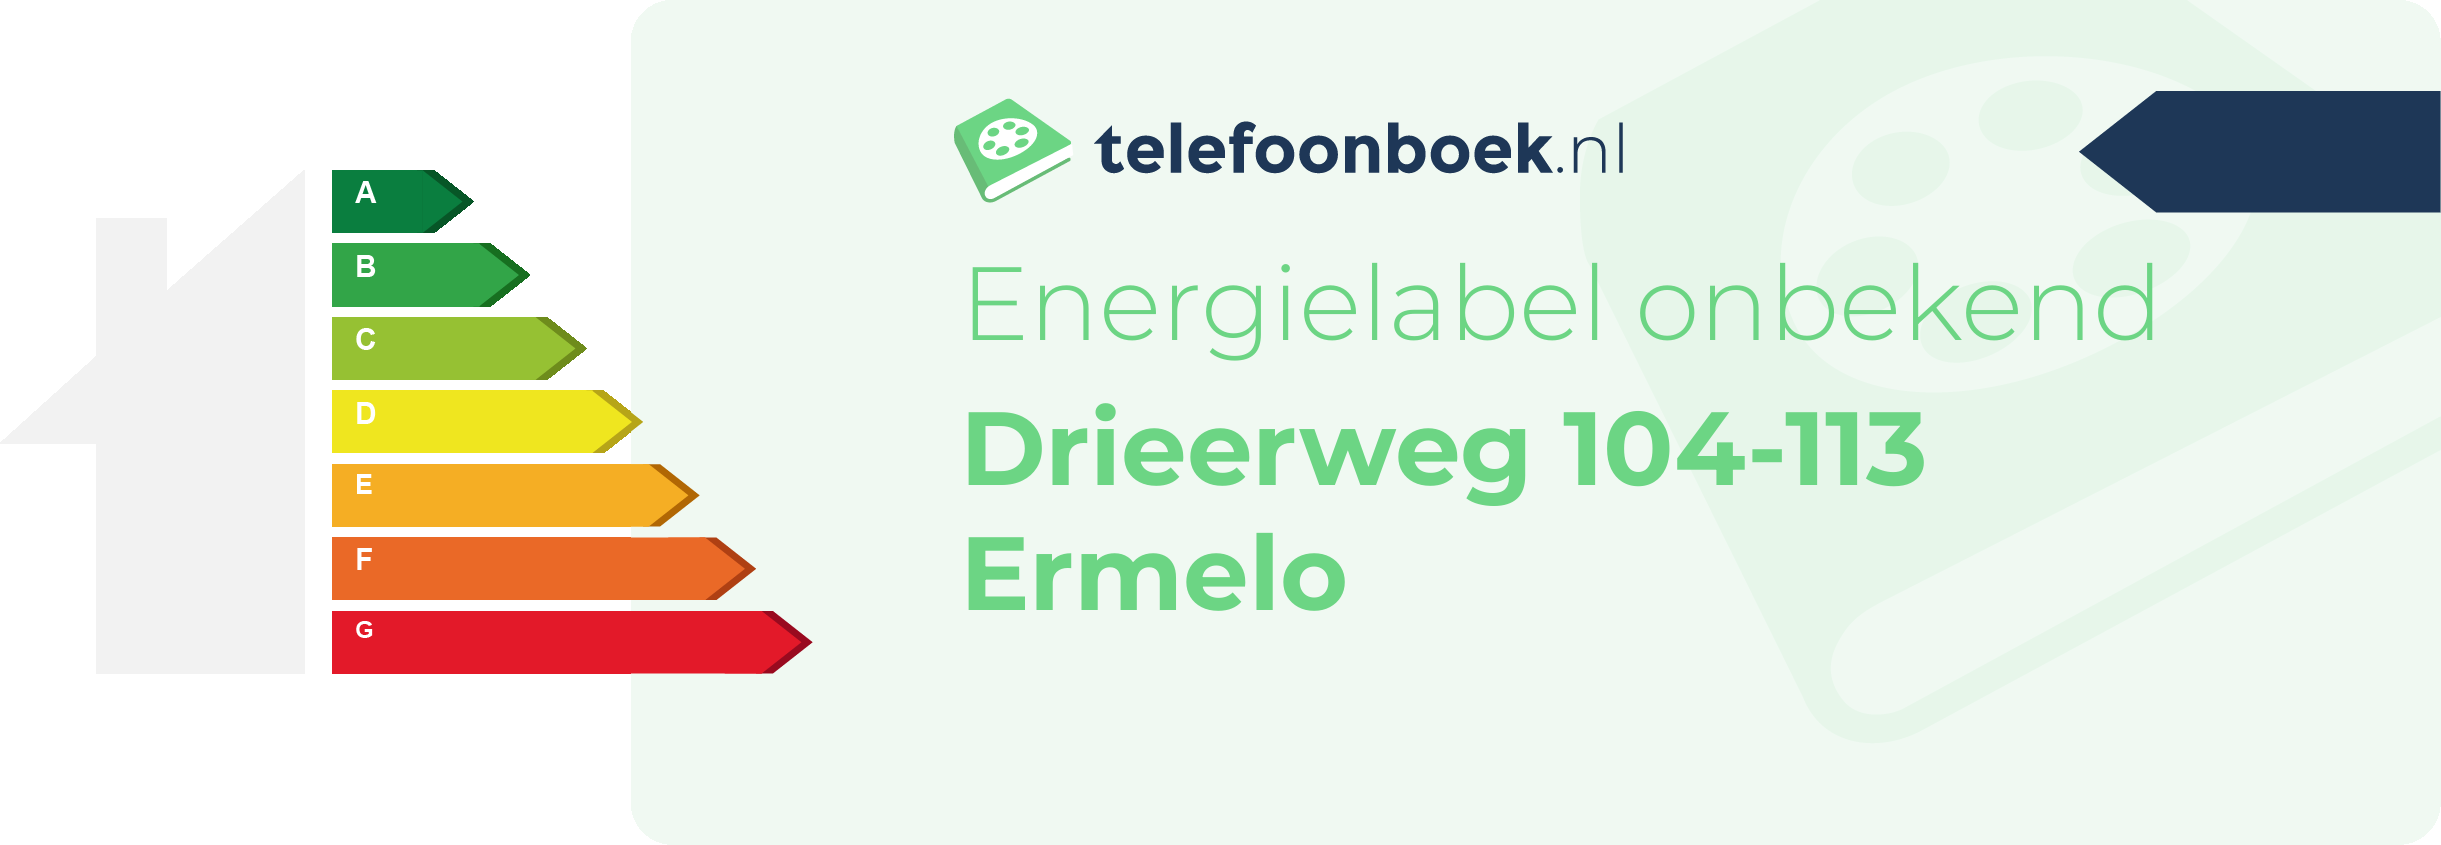 Energielabel Drieerweg 104-113 Ermelo